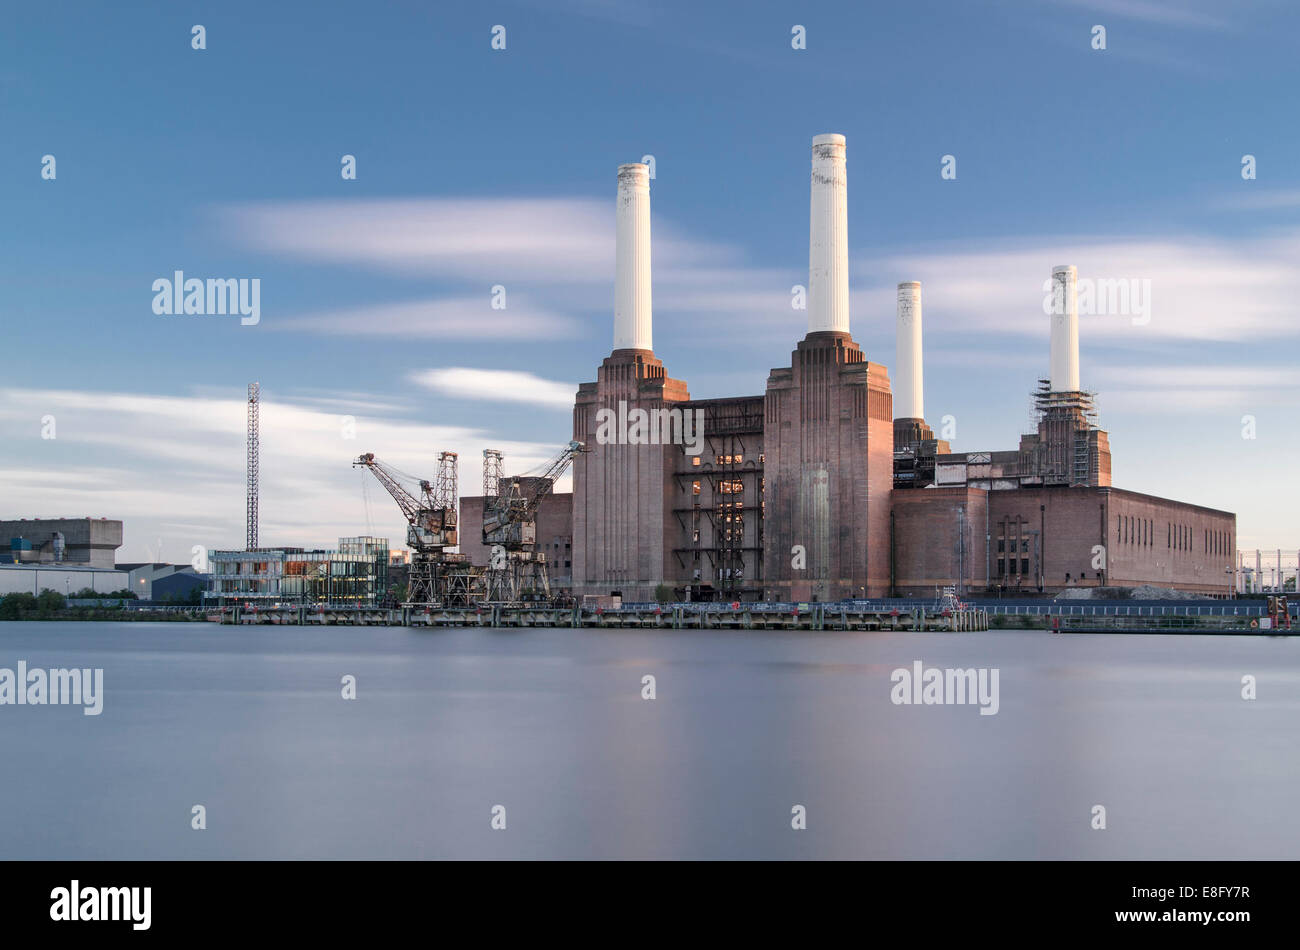 La central eléctrica de Battersea visto desde la orilla norte del Támesis, Londres, Inglaterra. Foto de stock